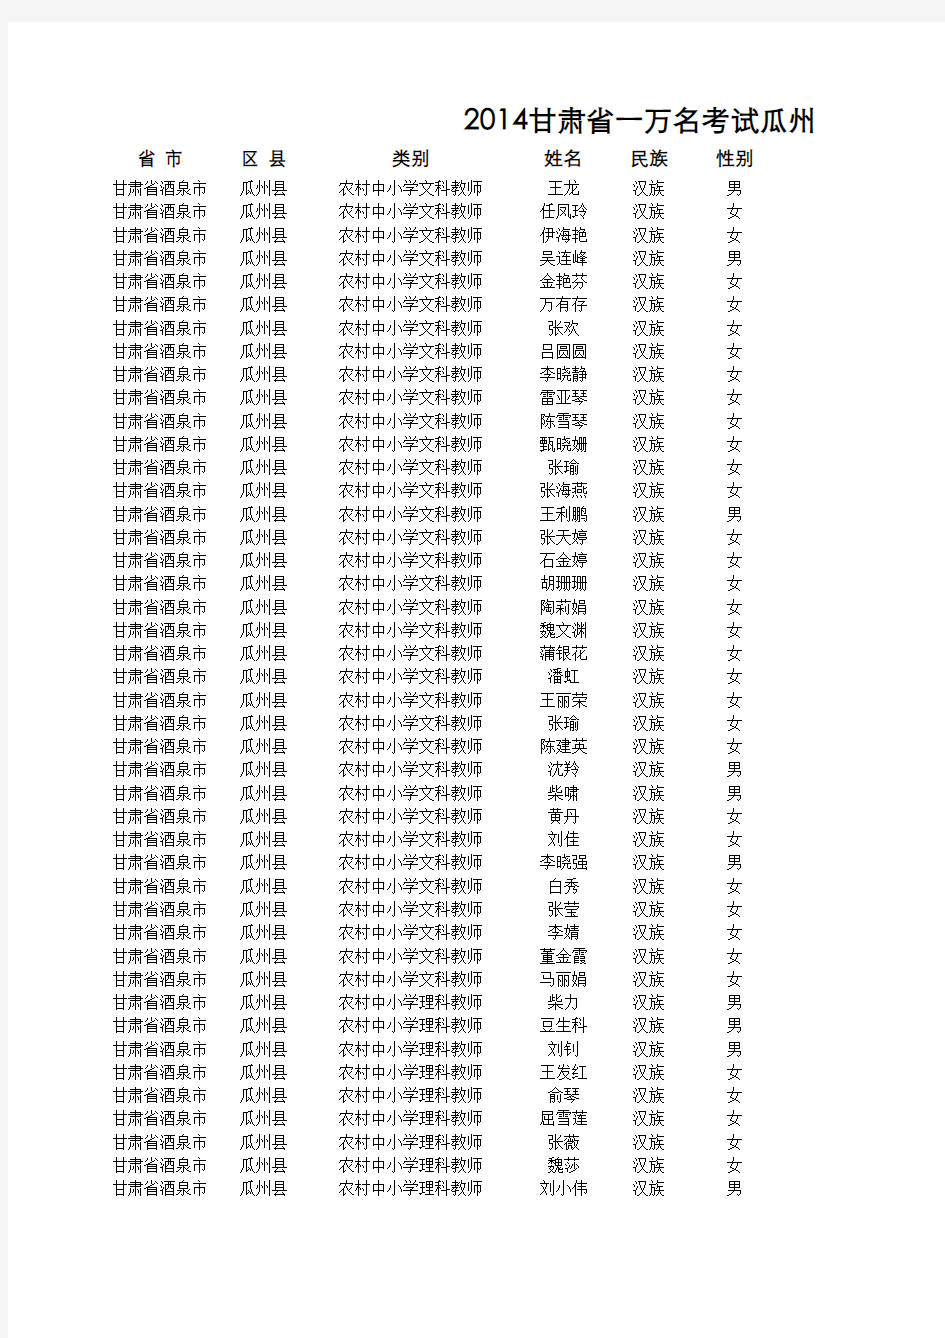 2014甘肃省一万名考试瓜州县成绩公布